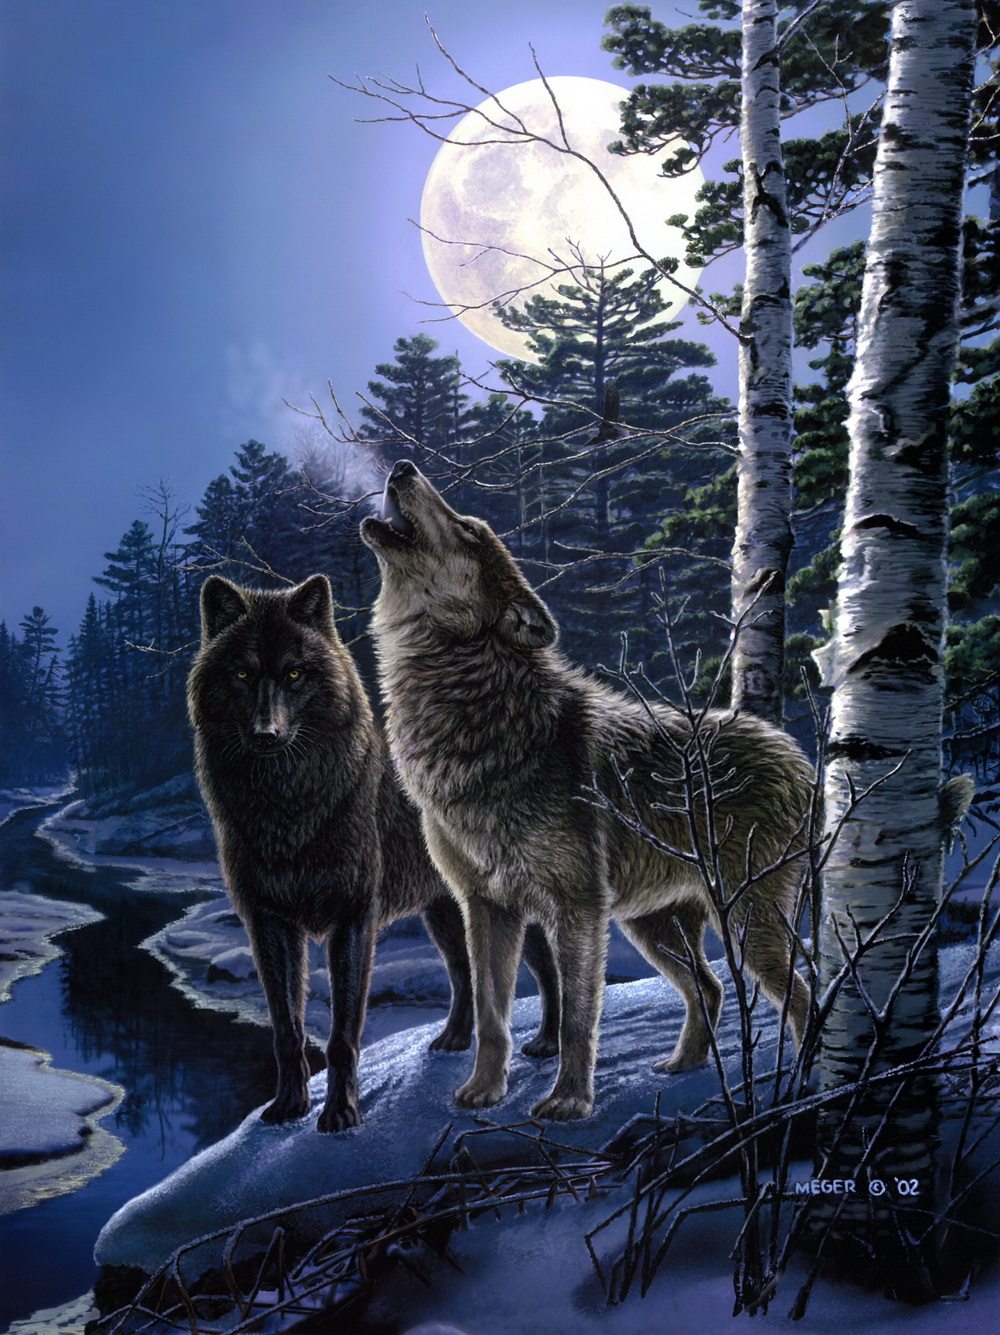 Природу про волков. Художник James Meger. Картина стая Волков. Волк в лесу. Пейзаж с волком.